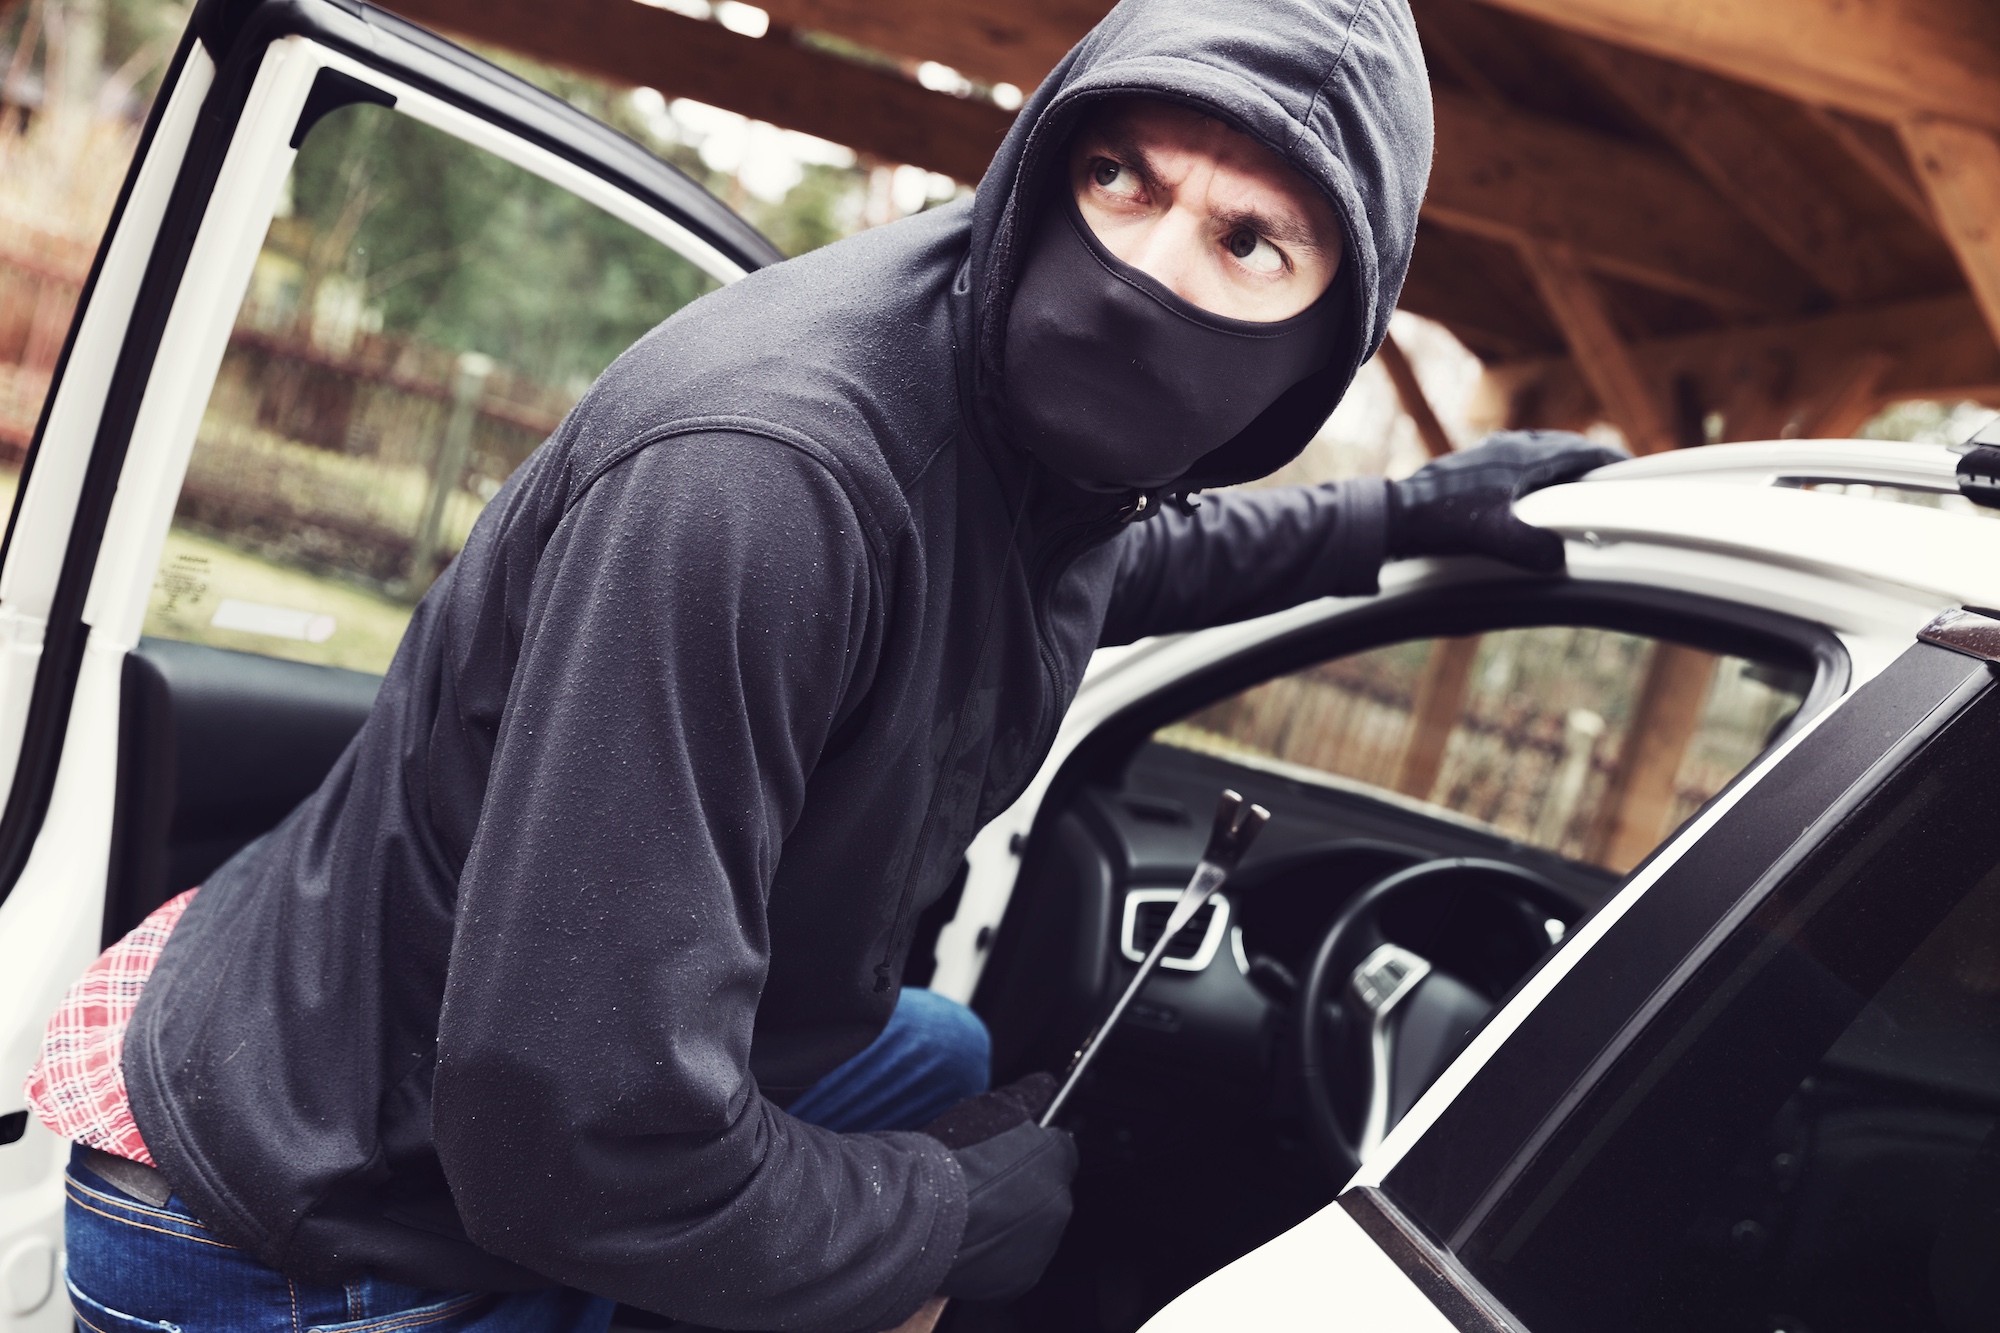 Smart Casco, czyli sprytna ochrona przed skutkami kradzieży auta